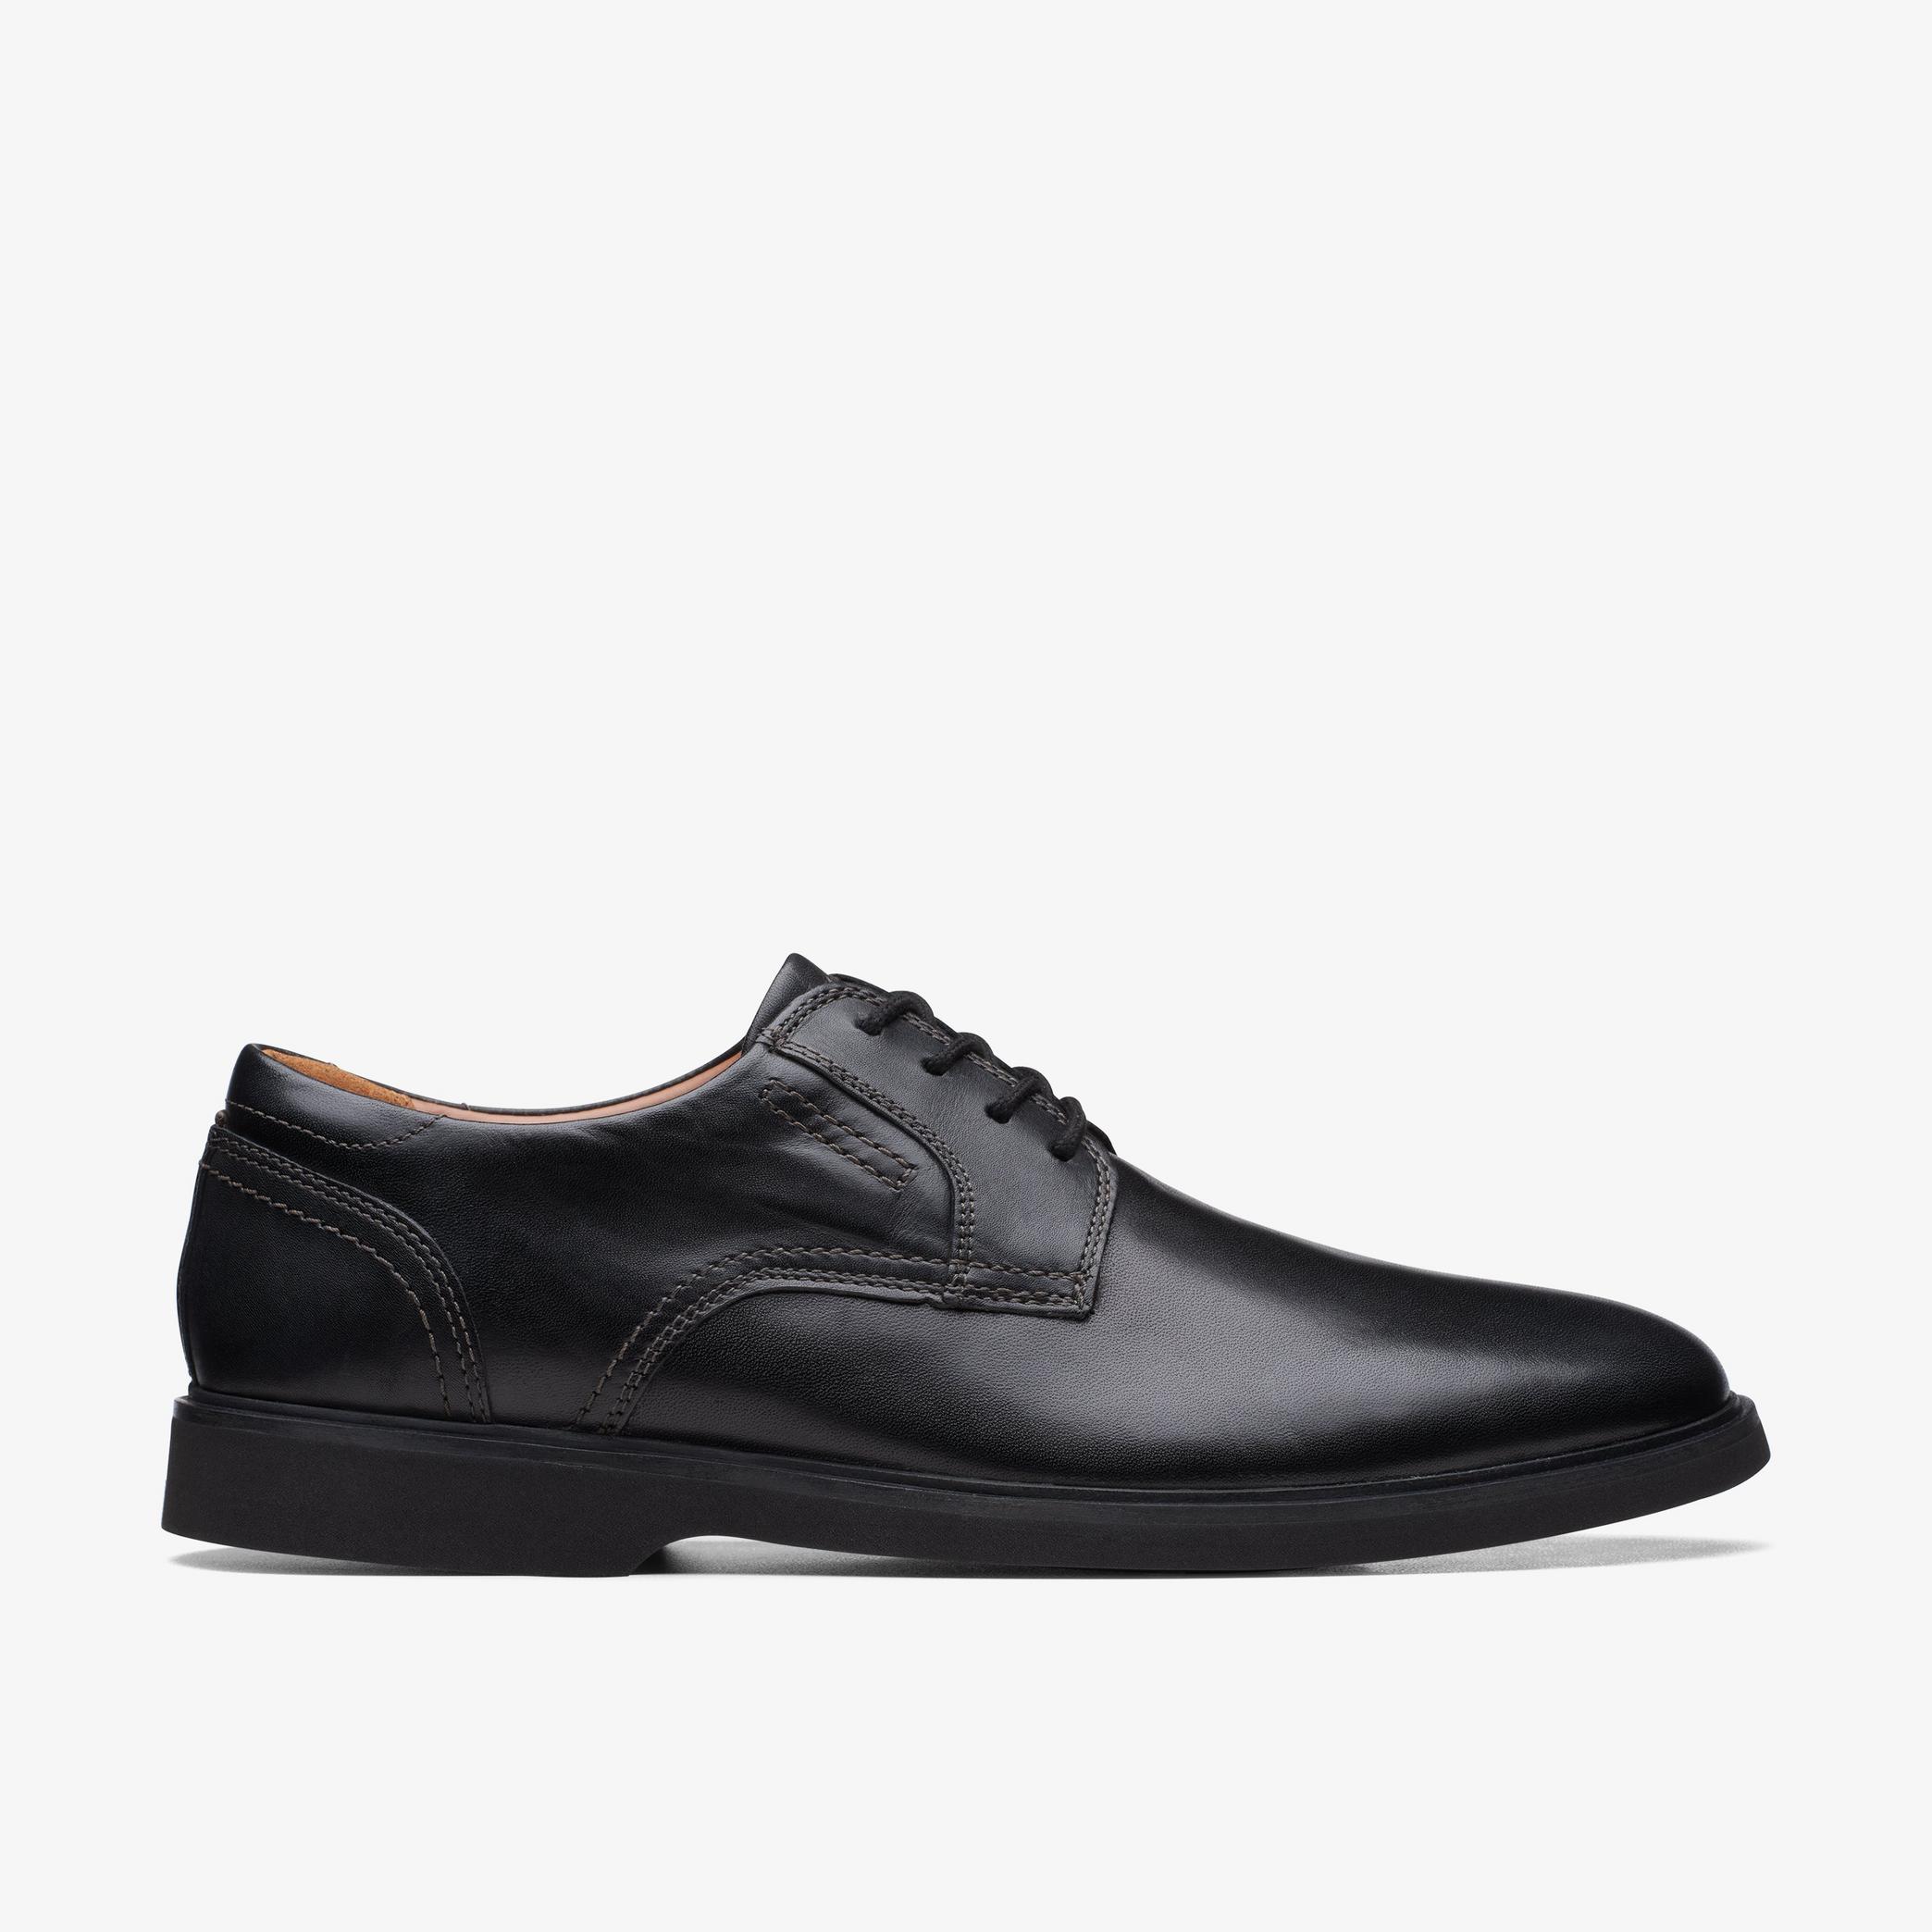 Chaussures Oxford en cuir noir Malwood Lace, vue 1 de 6